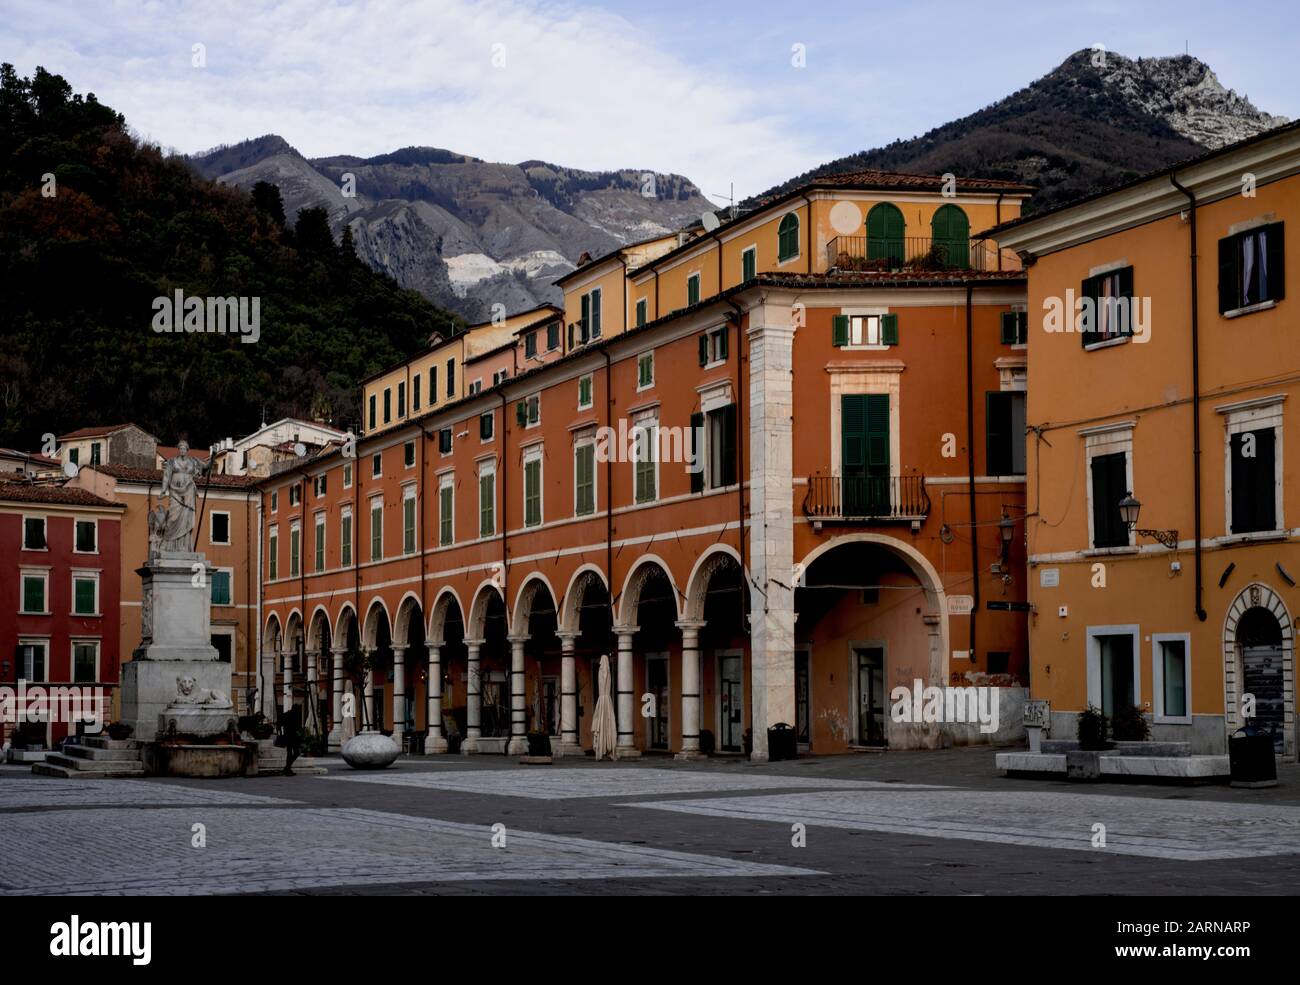 Edificios históricos con columnata arqueada en Piazza Alberica, Carrara, Toscana, Italia Foto de stock